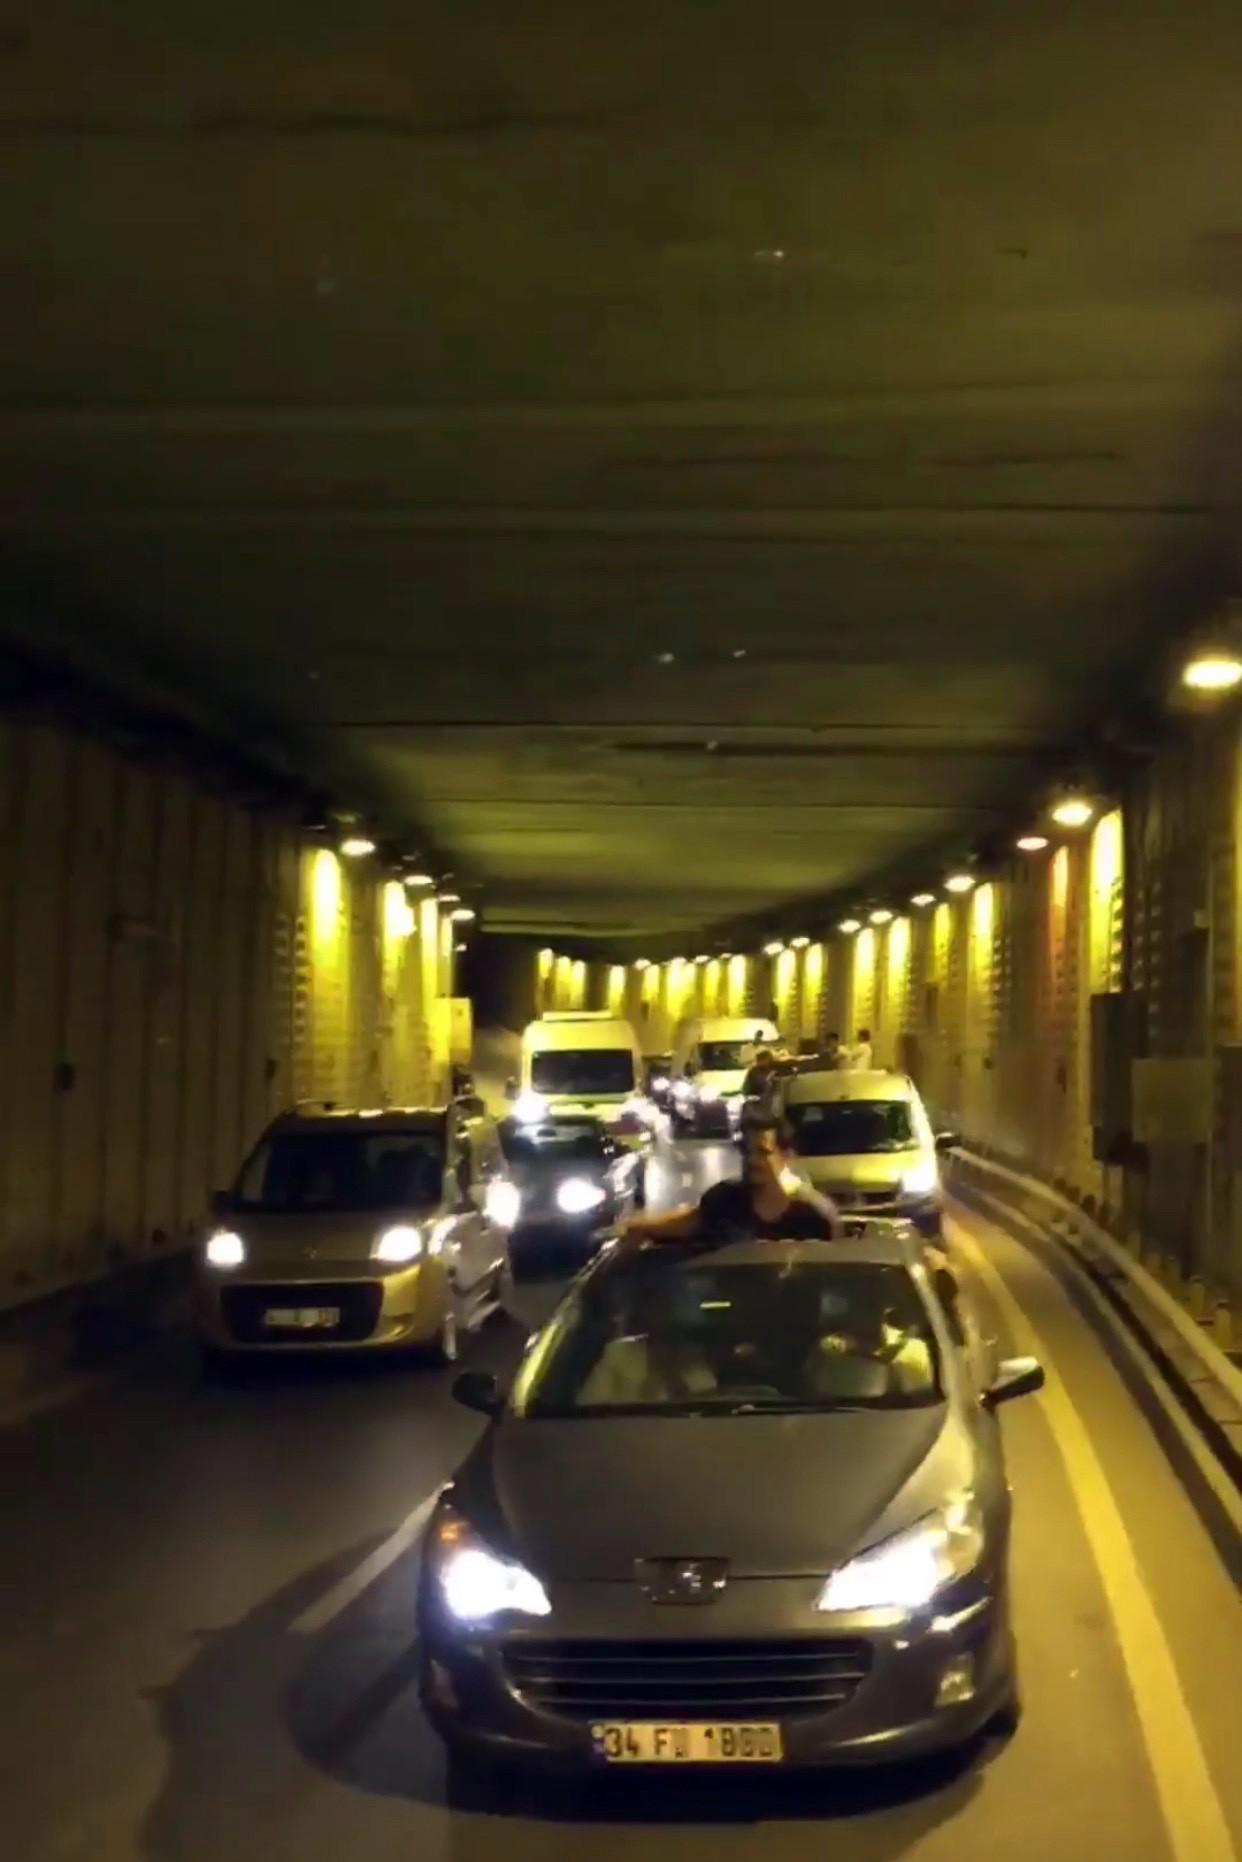 İstanbulda şoke eden görüntüler Tünel kapatıp havaya ateş açtılar…